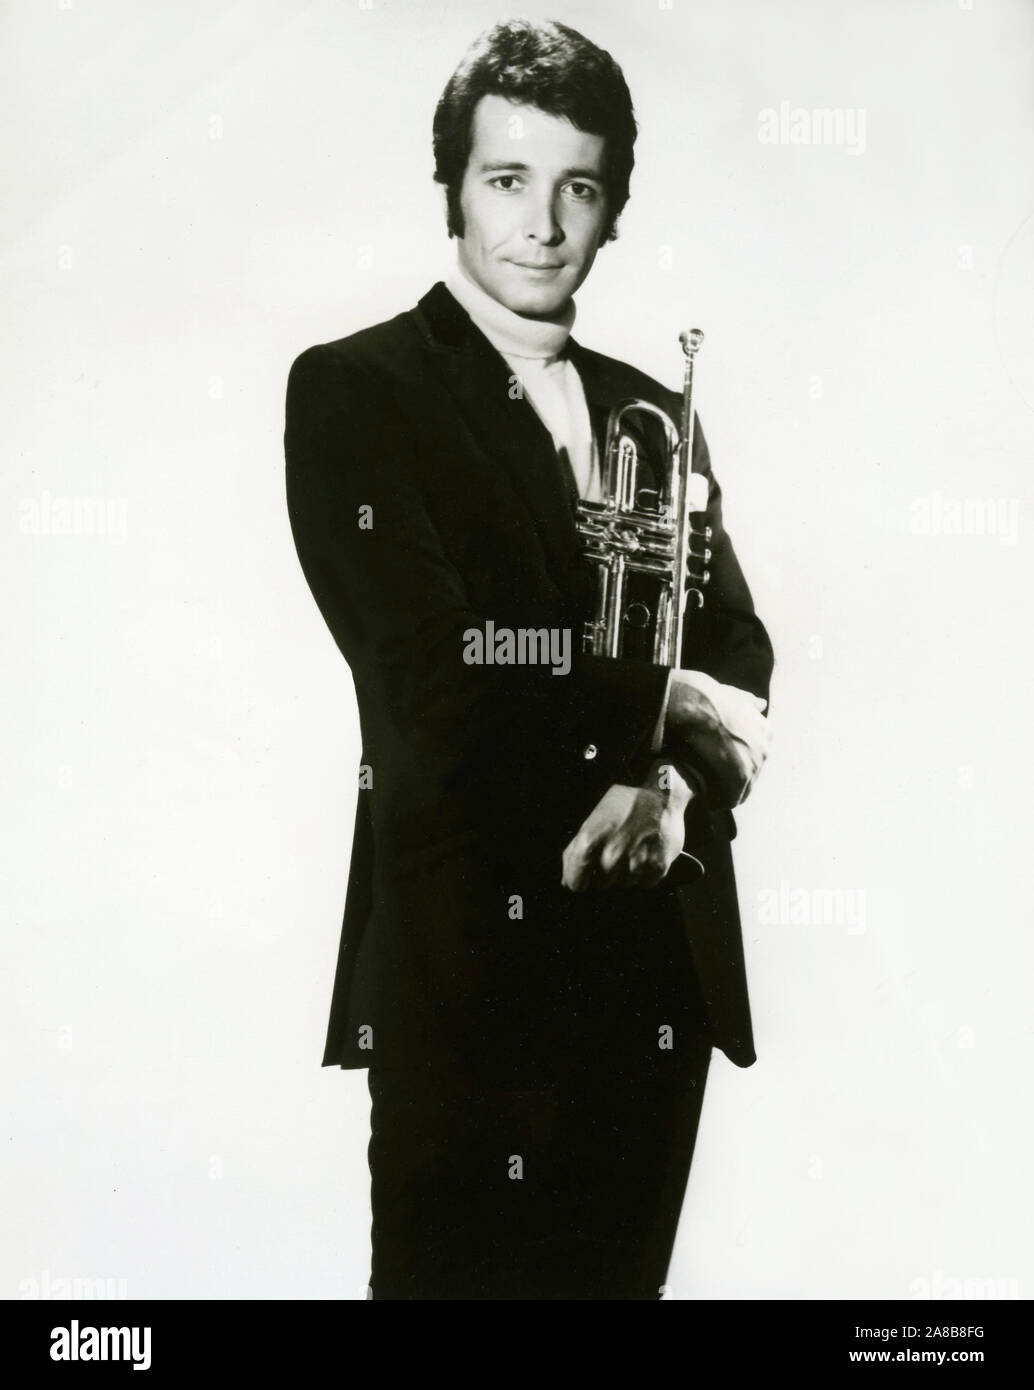 Werbung Foto des Musikers Herb Alpert für A&M Records um 1960 s Stockfoto